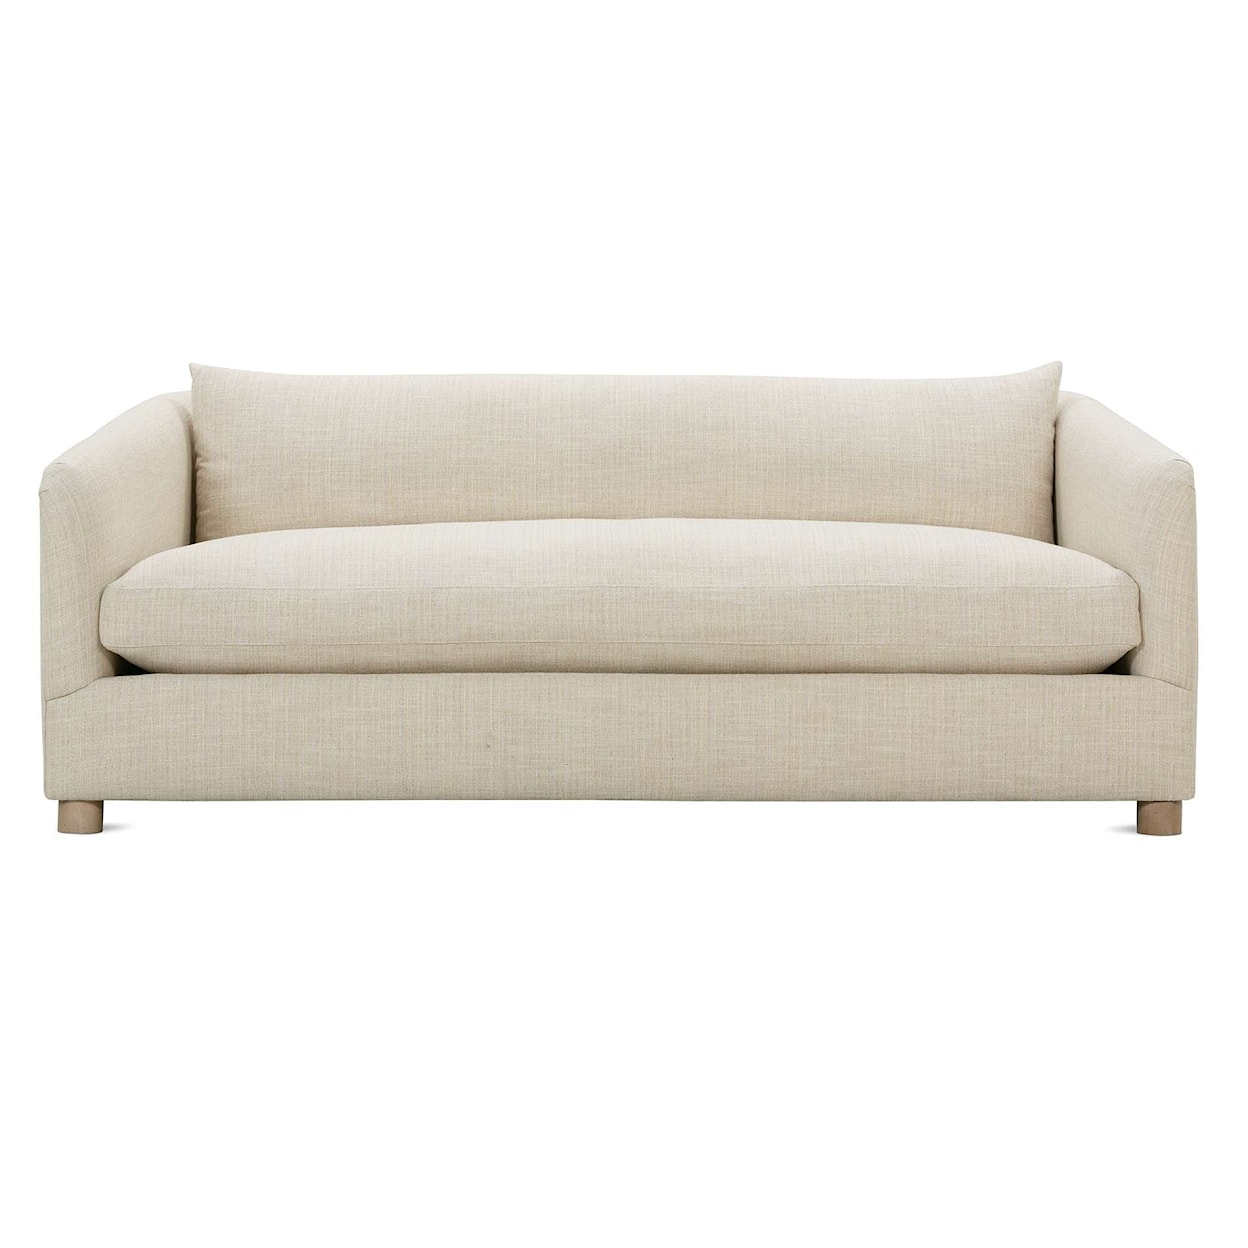 Robin Bruce Florence 76" Bench Cushion Sofa